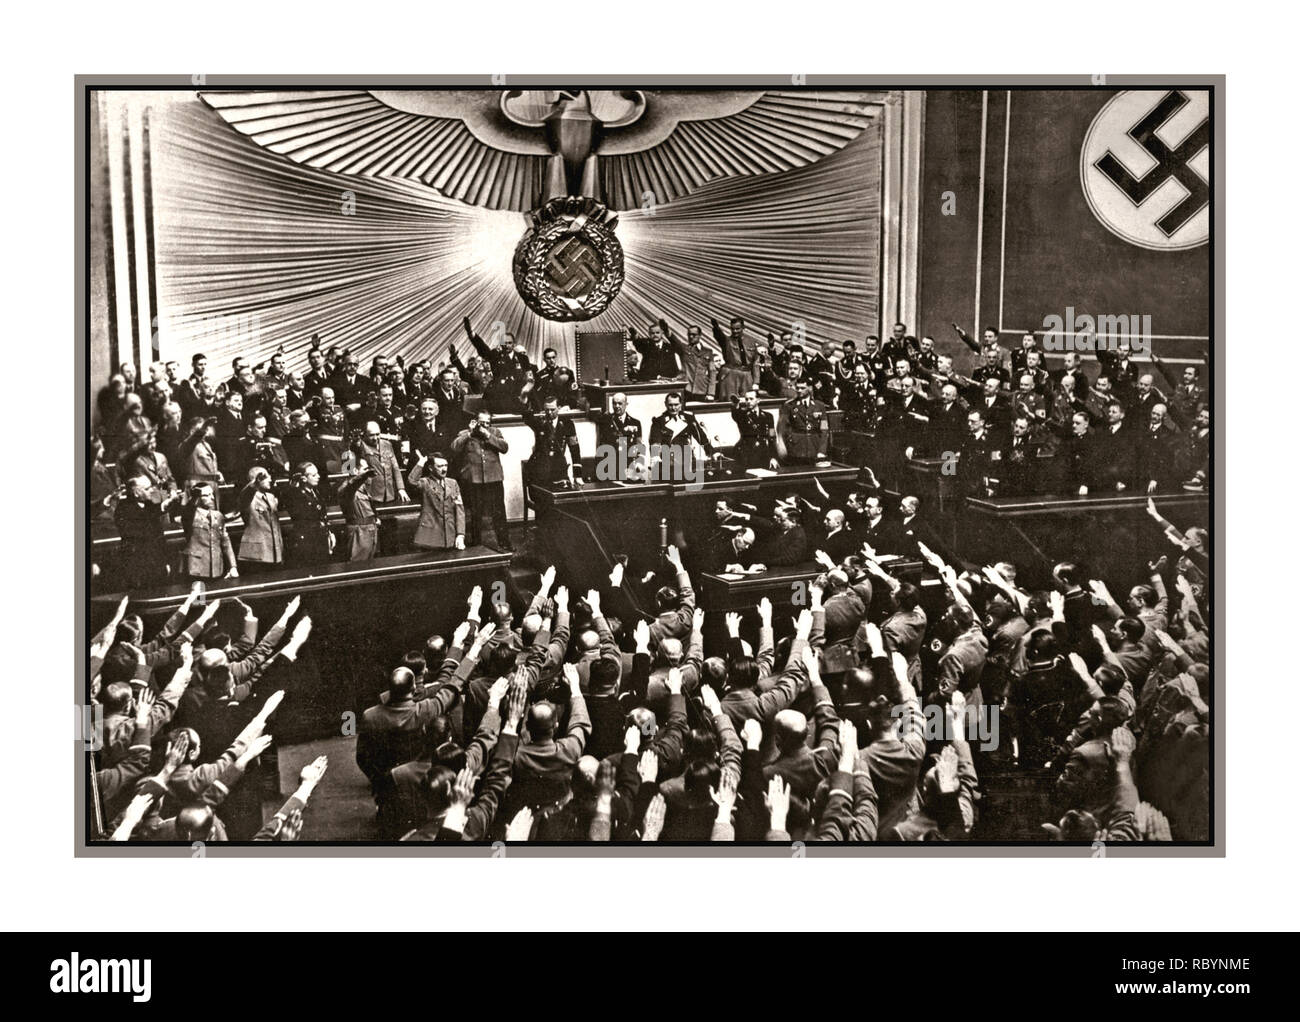 1938 Adolf Hitler einen Sturm der Beifall und Heil Hitler begrüßt vom Reichstag Abgeordnete nach der Ankündigung des "friedlichen" Besetzung/Anschluss von Österreich. Ort: Berlin, Deutschland Datum: März 1938 Stockfoto